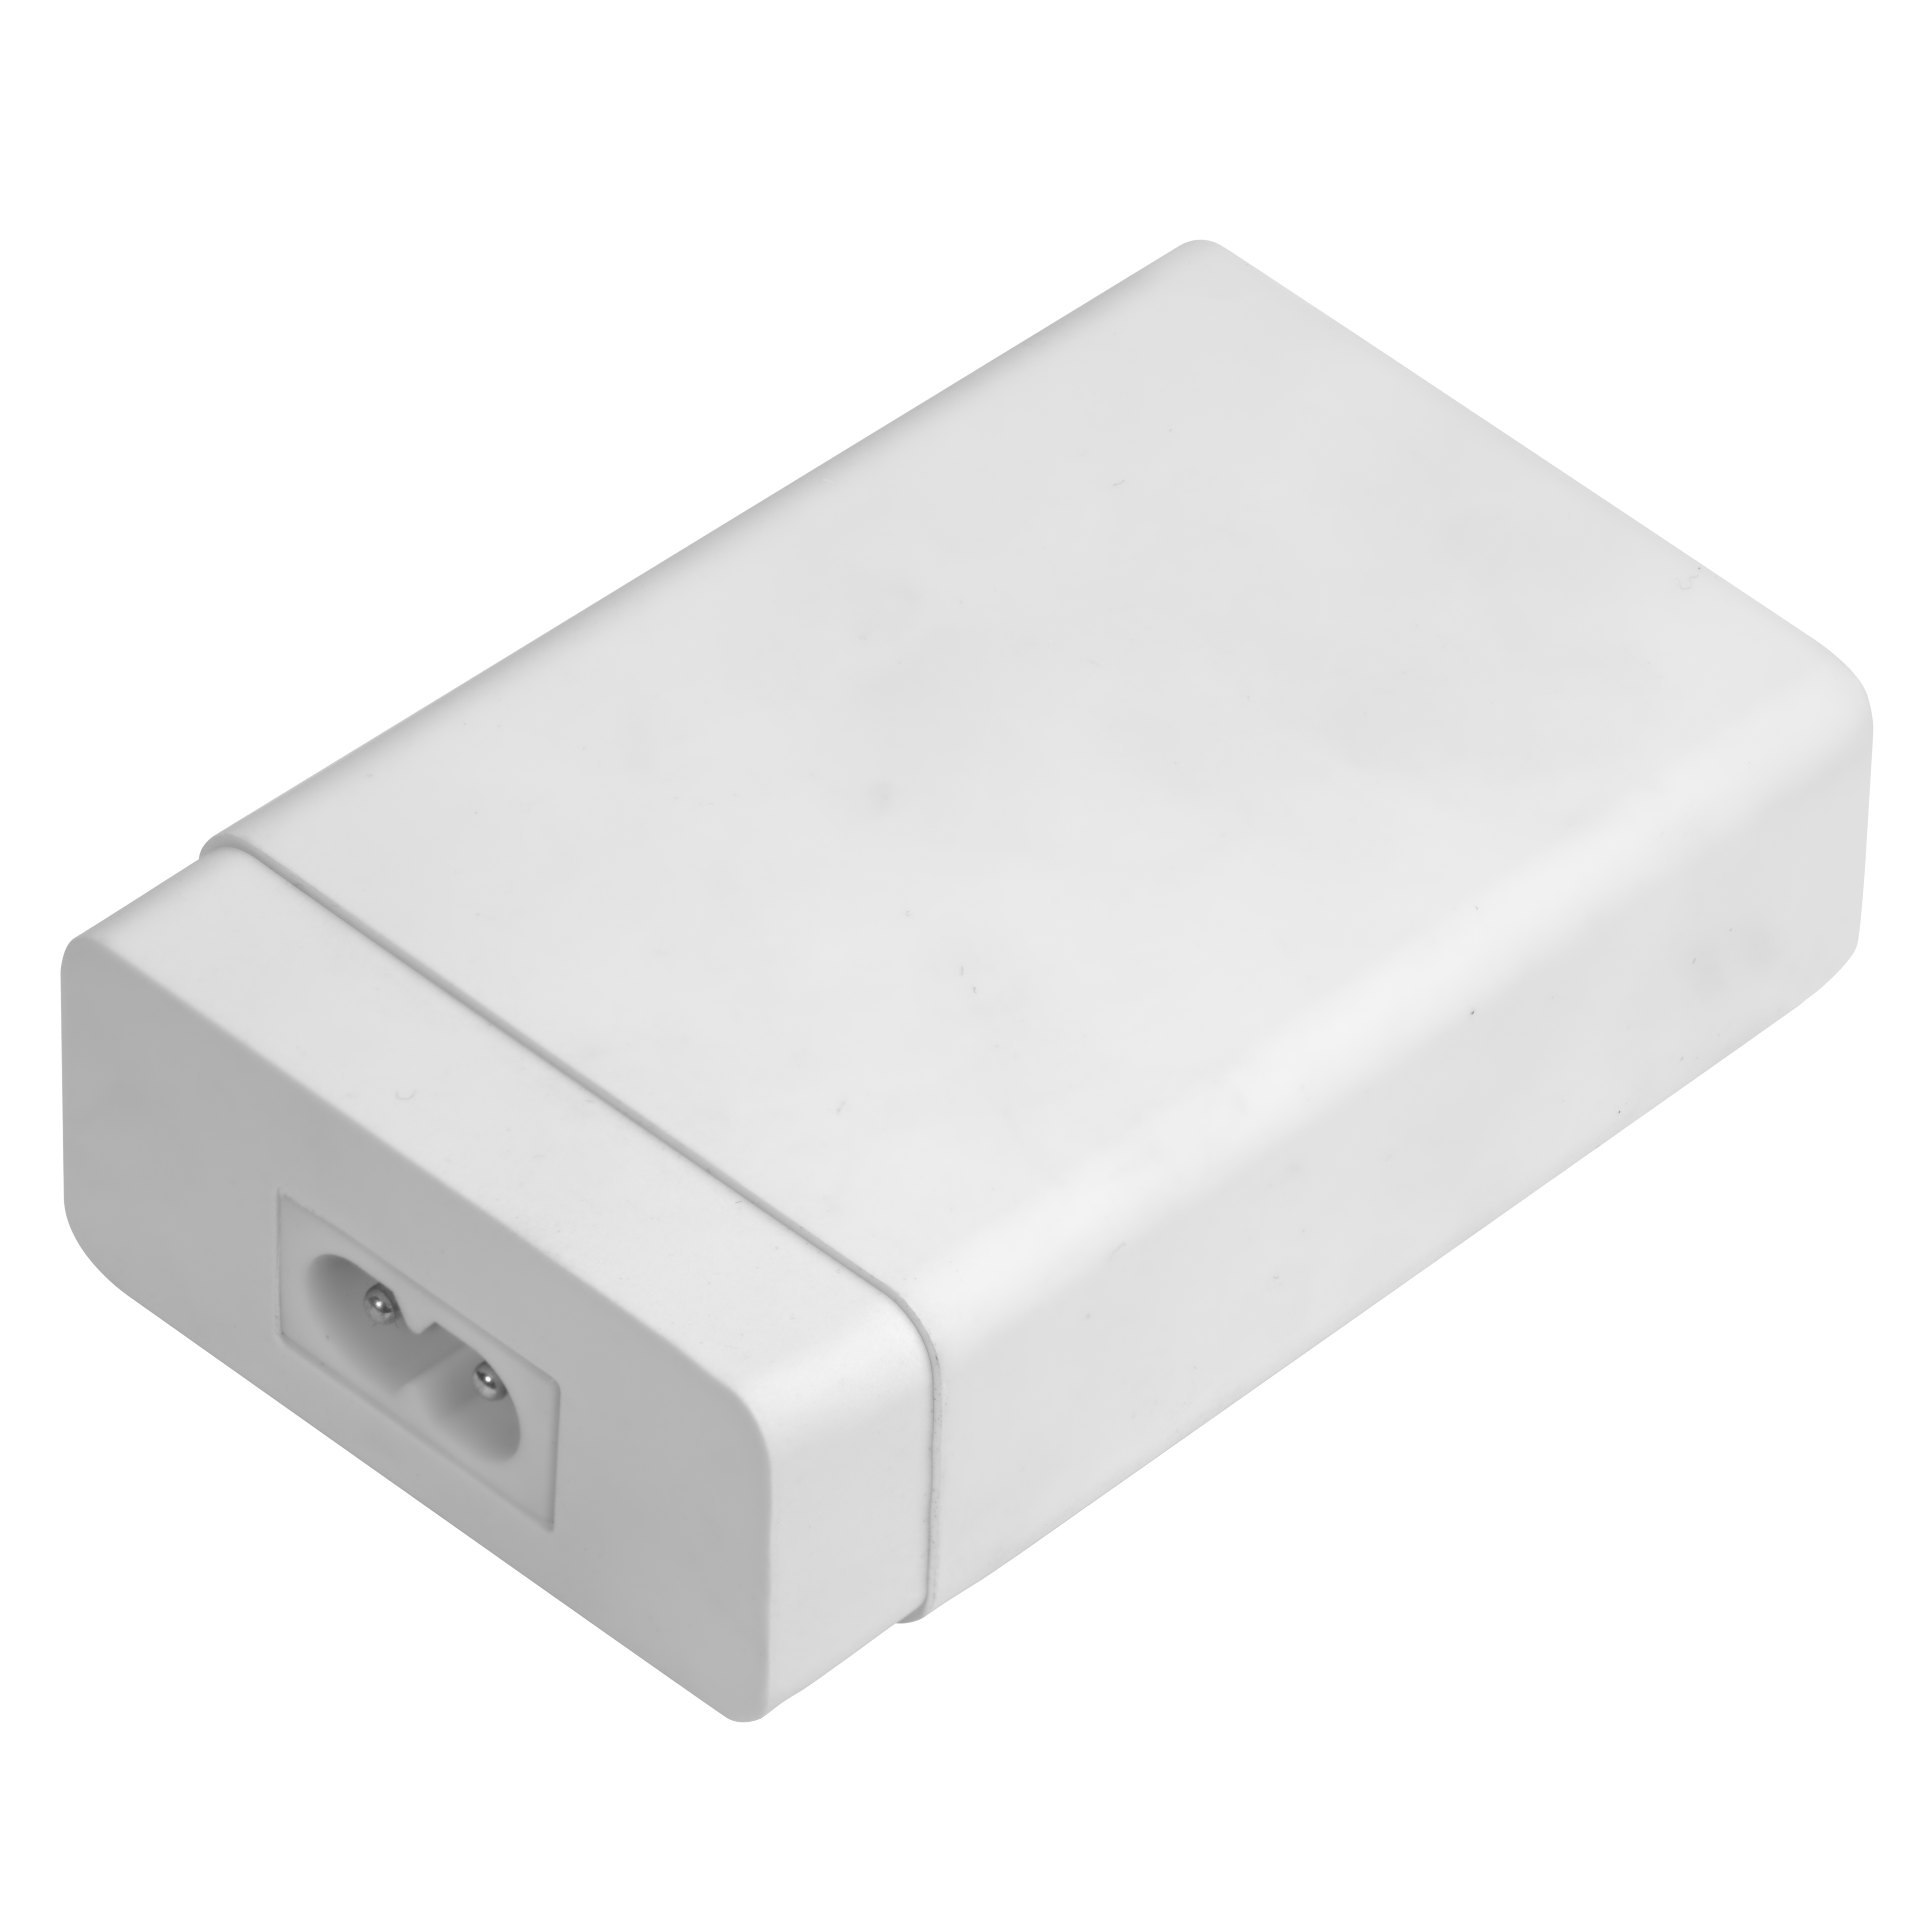 Сетевое зарядное устройство на 5 USB постов 5V/8А для iPhone, Samsung, Honor